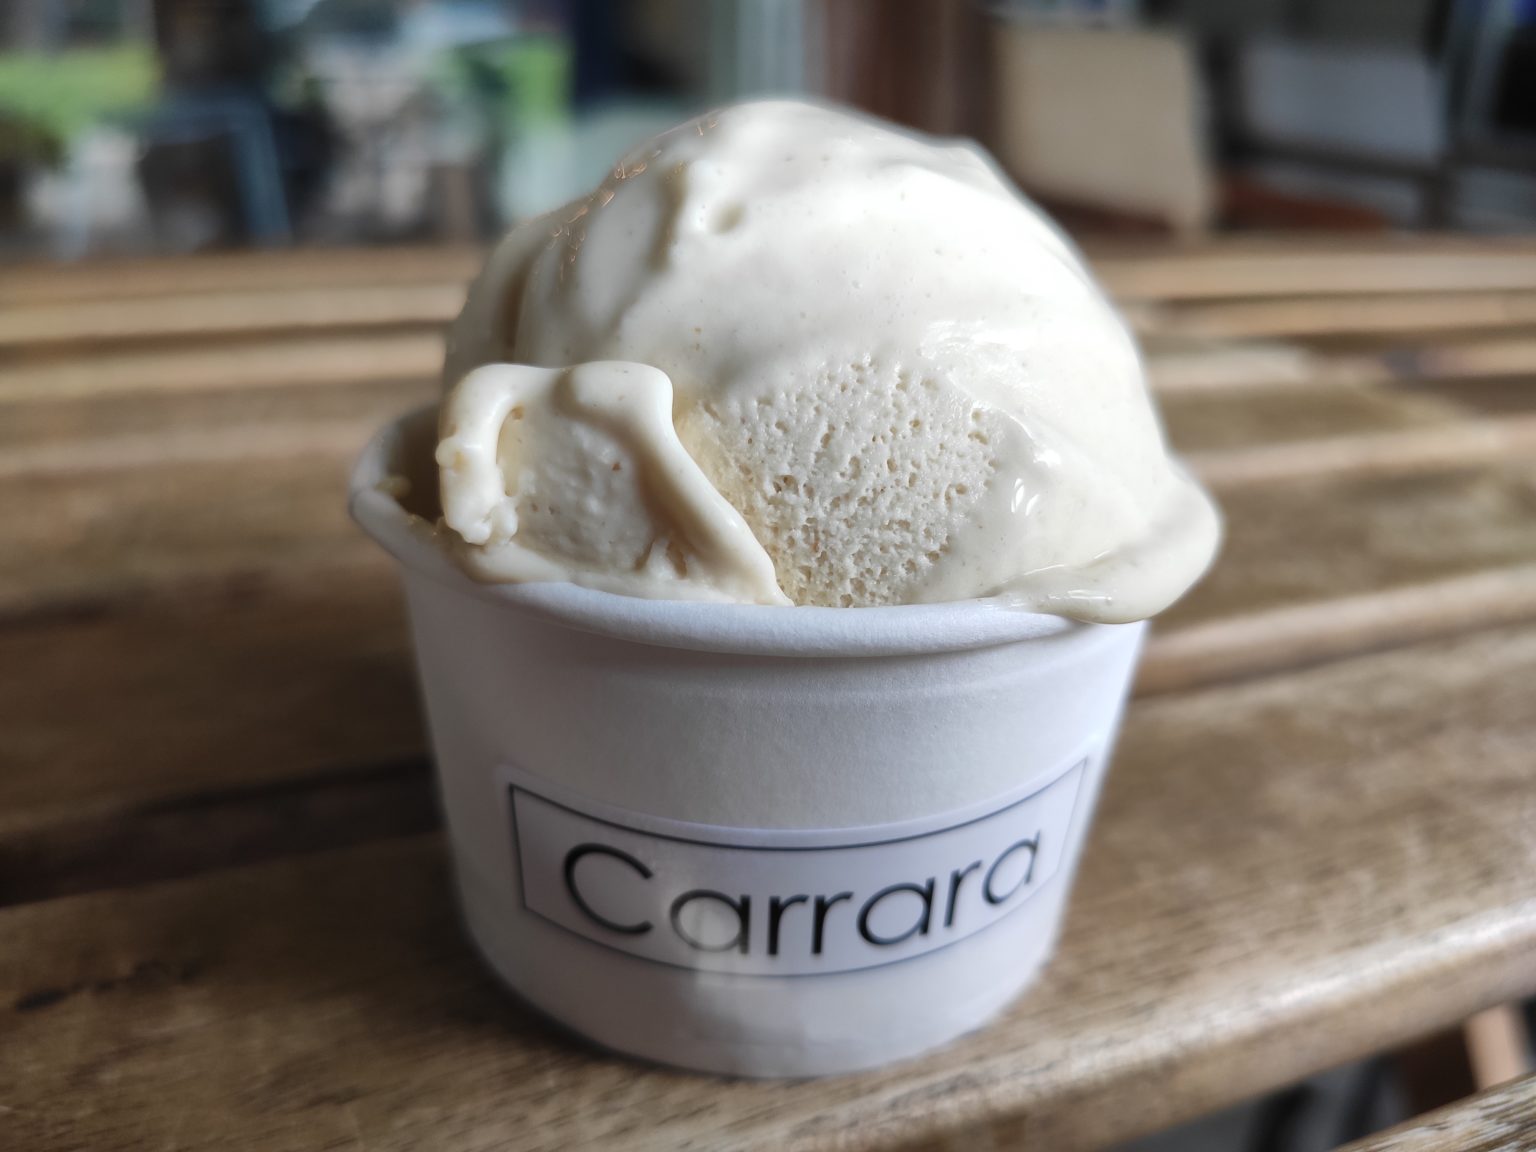 Review: Carrara Cafe (Singapore)